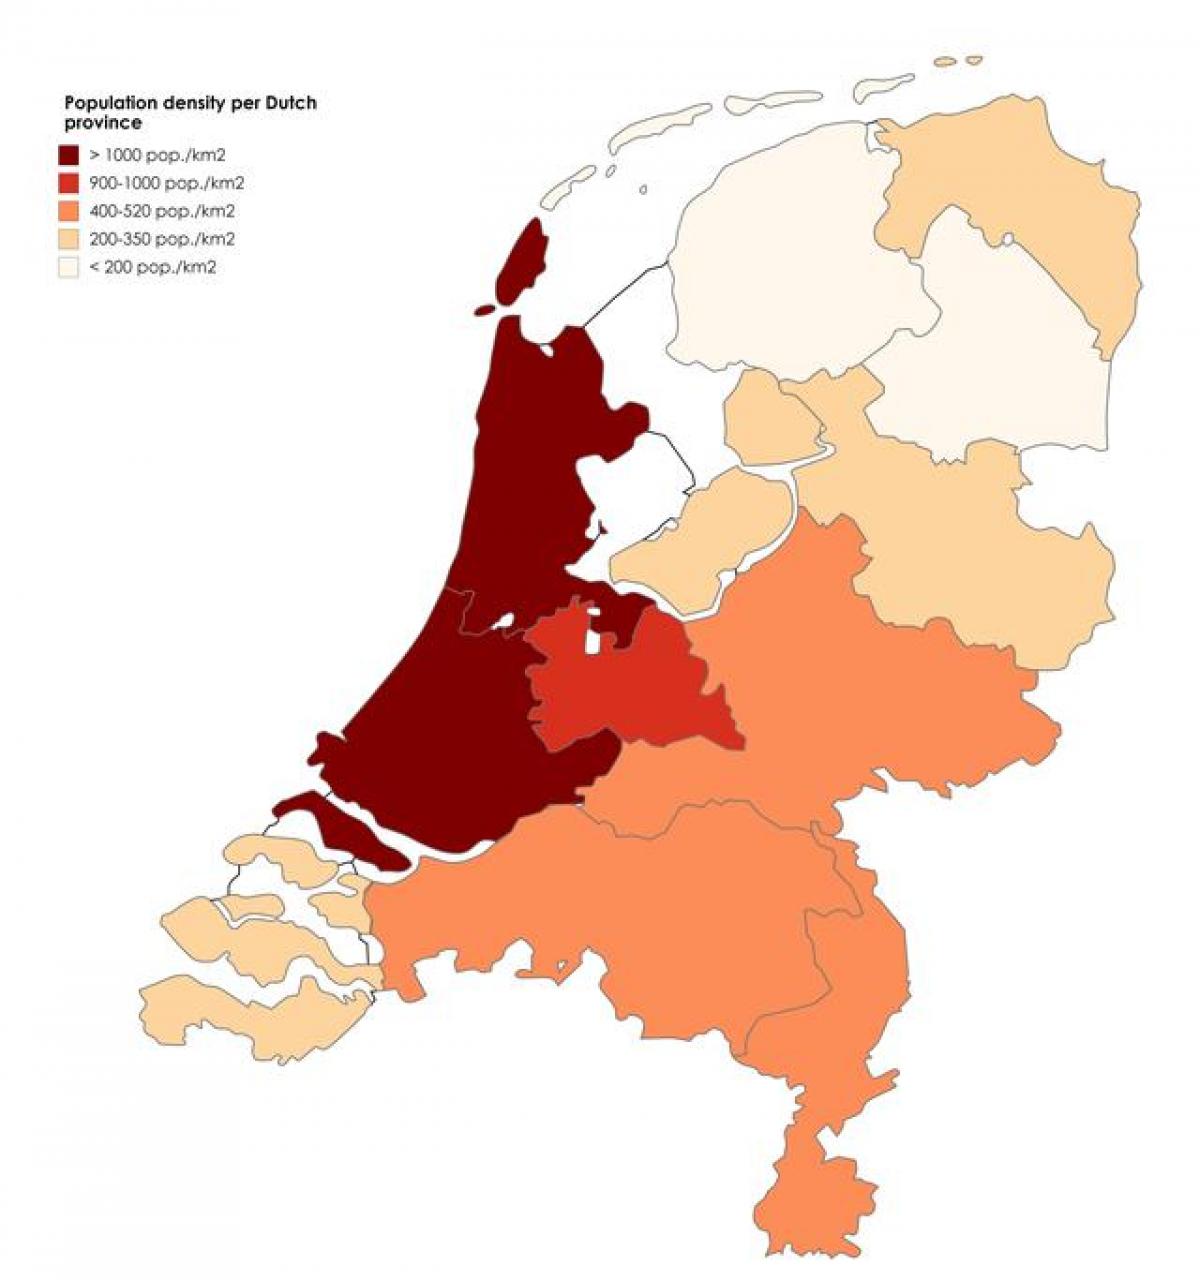 Mappa della densità dei Paesi Bassi